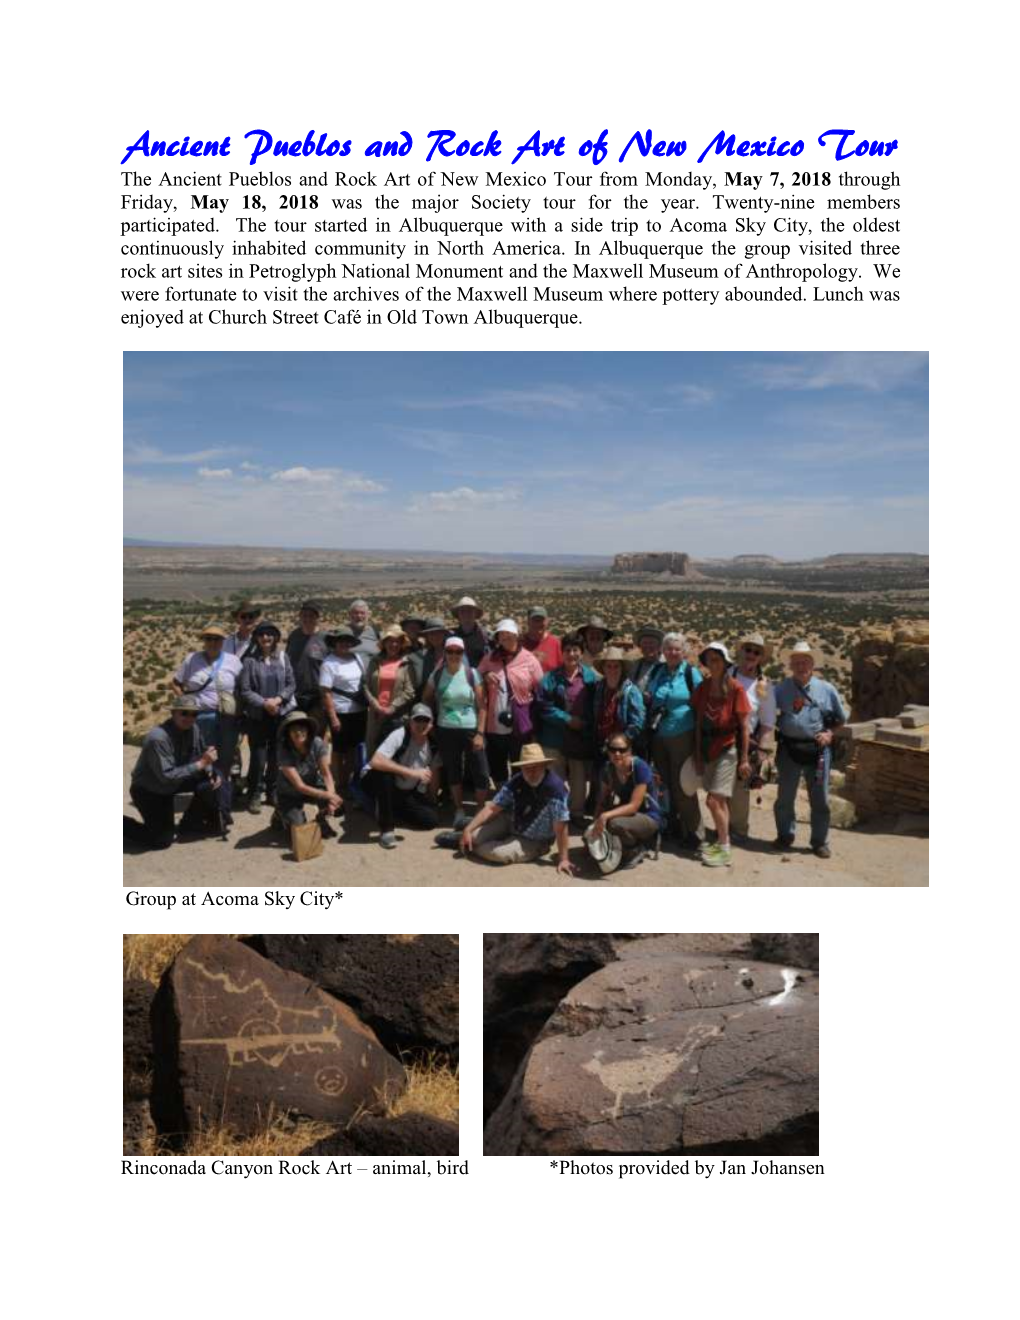 2018 Ancient Pueblo and Rock Art Tour